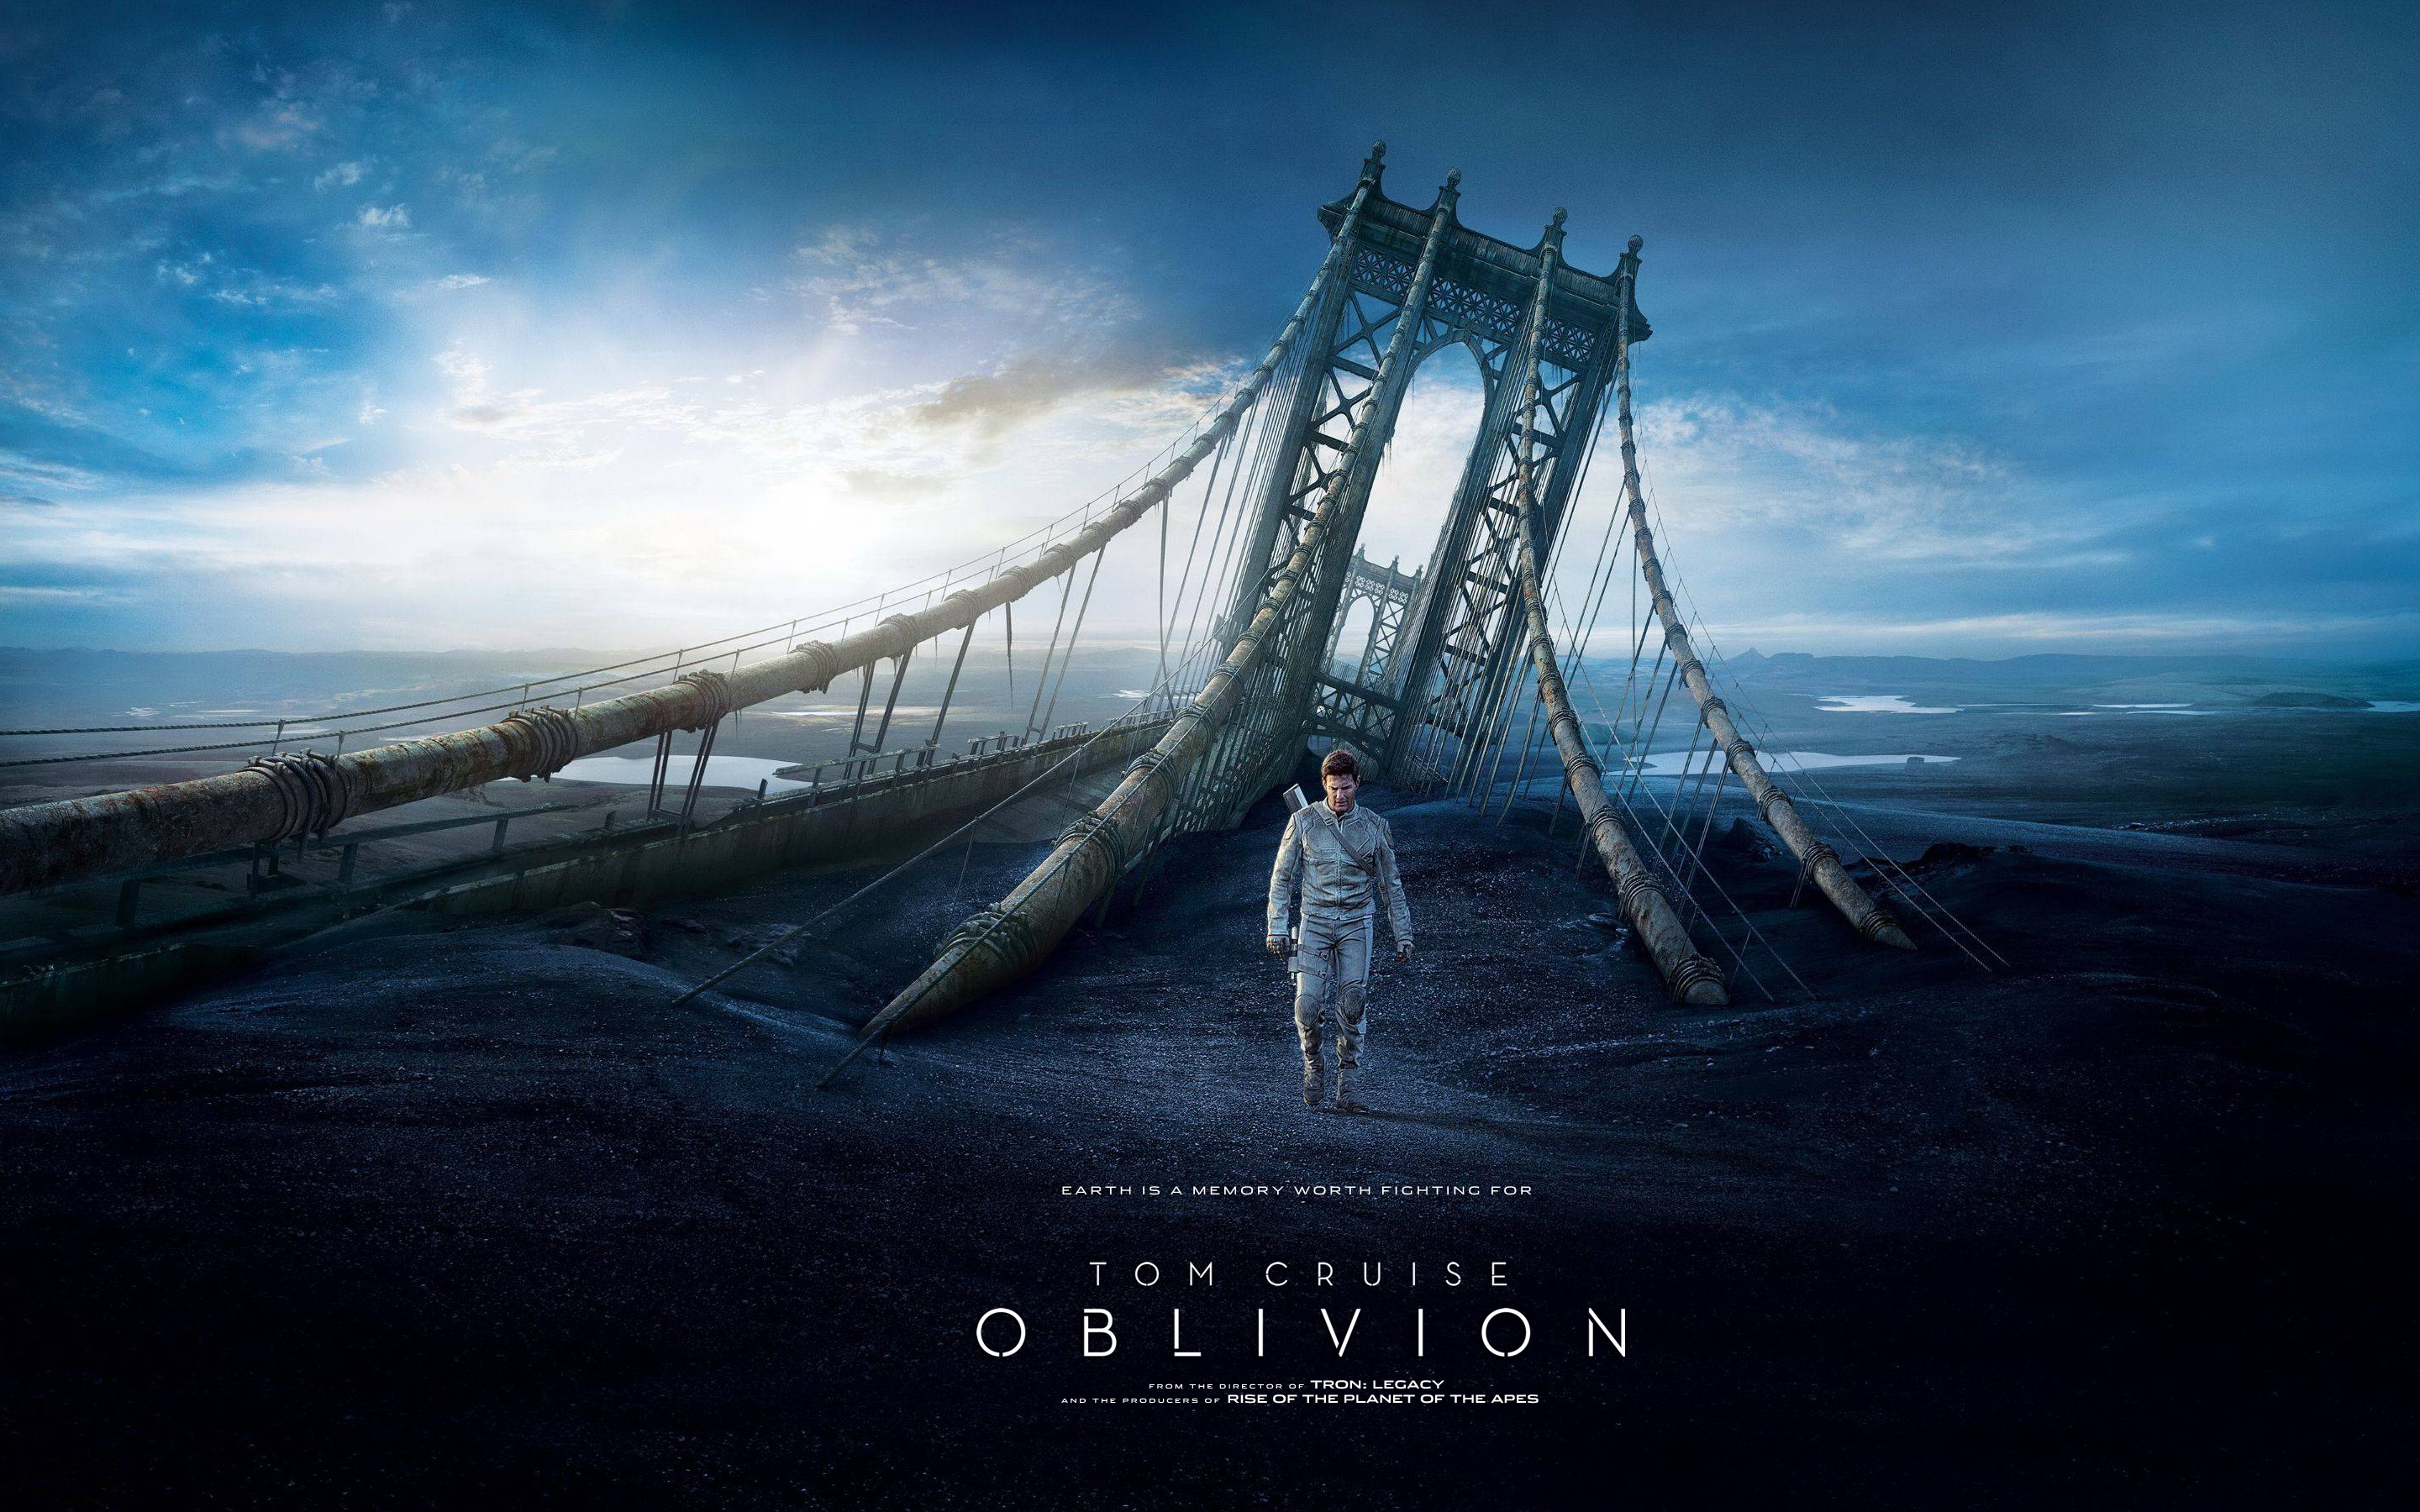 Oblivion Blu-Ray SteelBook is being released in the UK